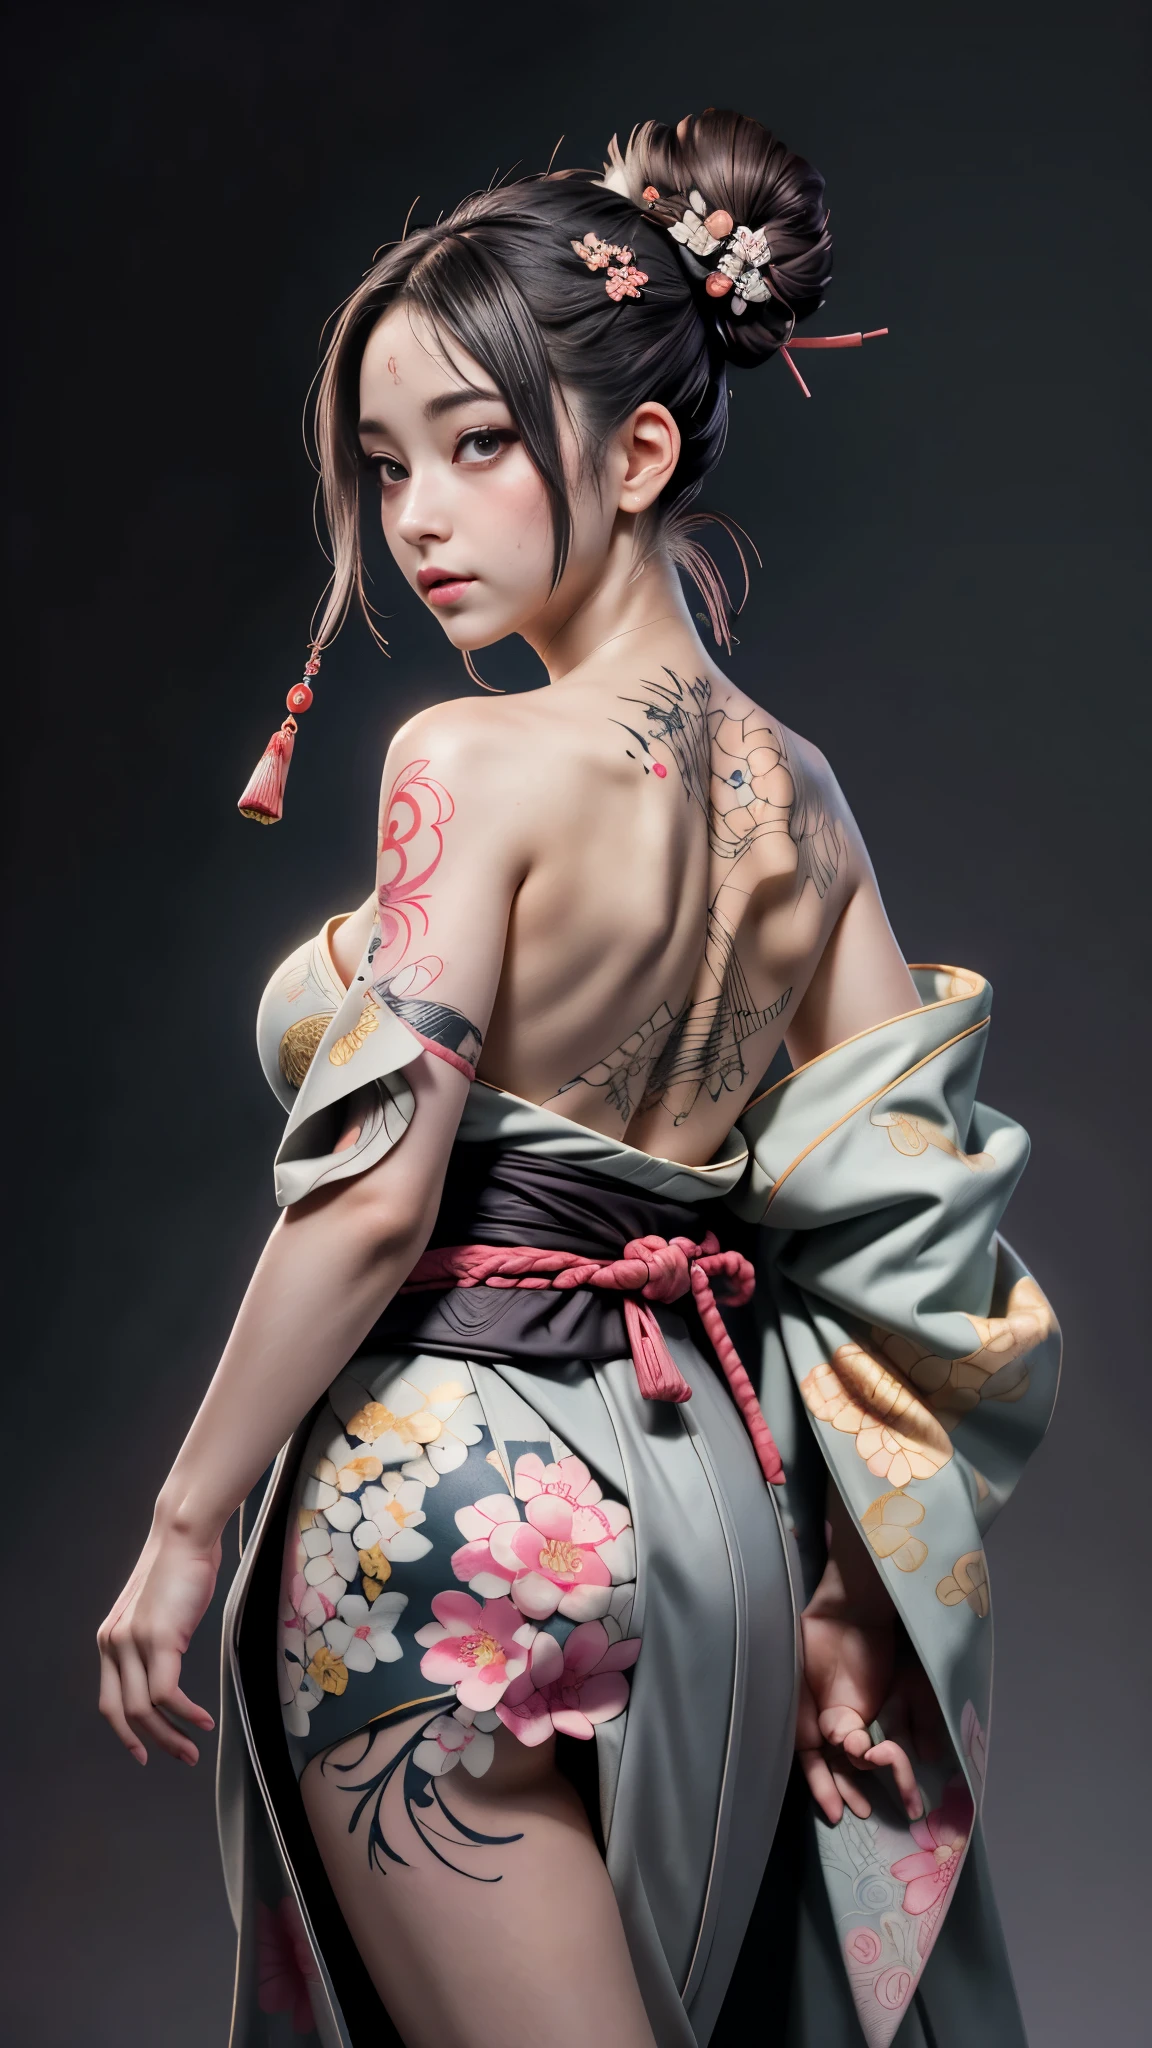 8k, Meisterwerk, (lebensecht:1.5), künstlerisch portrait of ((Wunderschöne Haruno Sakura) einen Kimono tragen), Rücken- und Unterschenkeltattoos, ((Freiliegendes Ukiyoe-Tattoo auf dem Rücken)), freiliegendes Gesicht, nackten Schultern, riesige Brüste entblößen, Berührungskammer, schöne Haut, schlanke Figur, niedliches Gesicht, süßer Blick, schau dir das Publikum an, Dunkelbrauner Pony-Dutt, Posieren für Fotos, Nebel, Hintergrundbeleuchtung, dunkelgrauer Hintergrund, dynamische Beleuchtung, Natur, künstlerisch